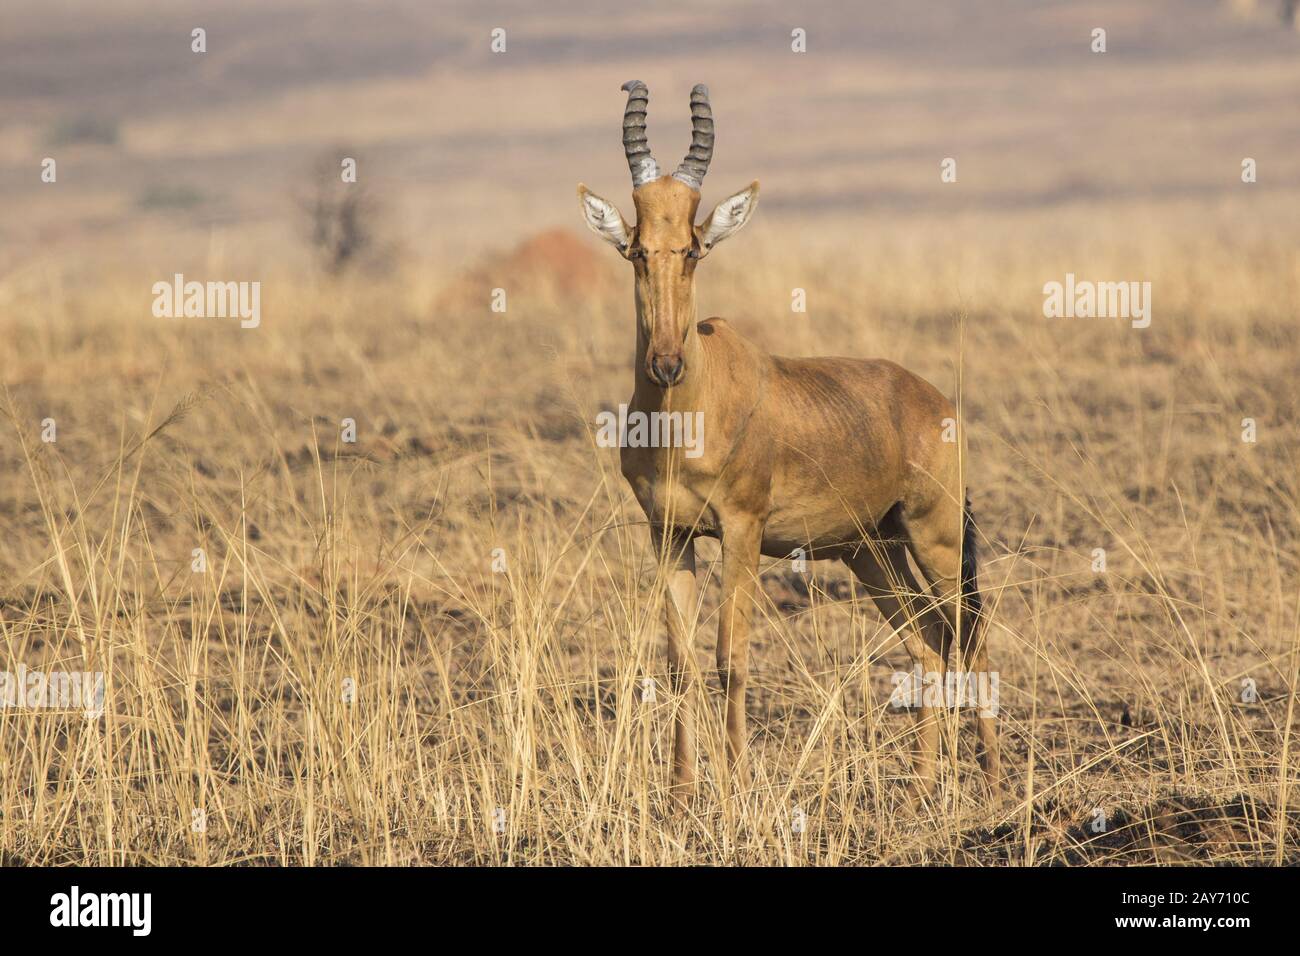 Lelwel Hartebeest que se erige en la sabana durante la estación seca en el fondo de hierba seca Foto de stock